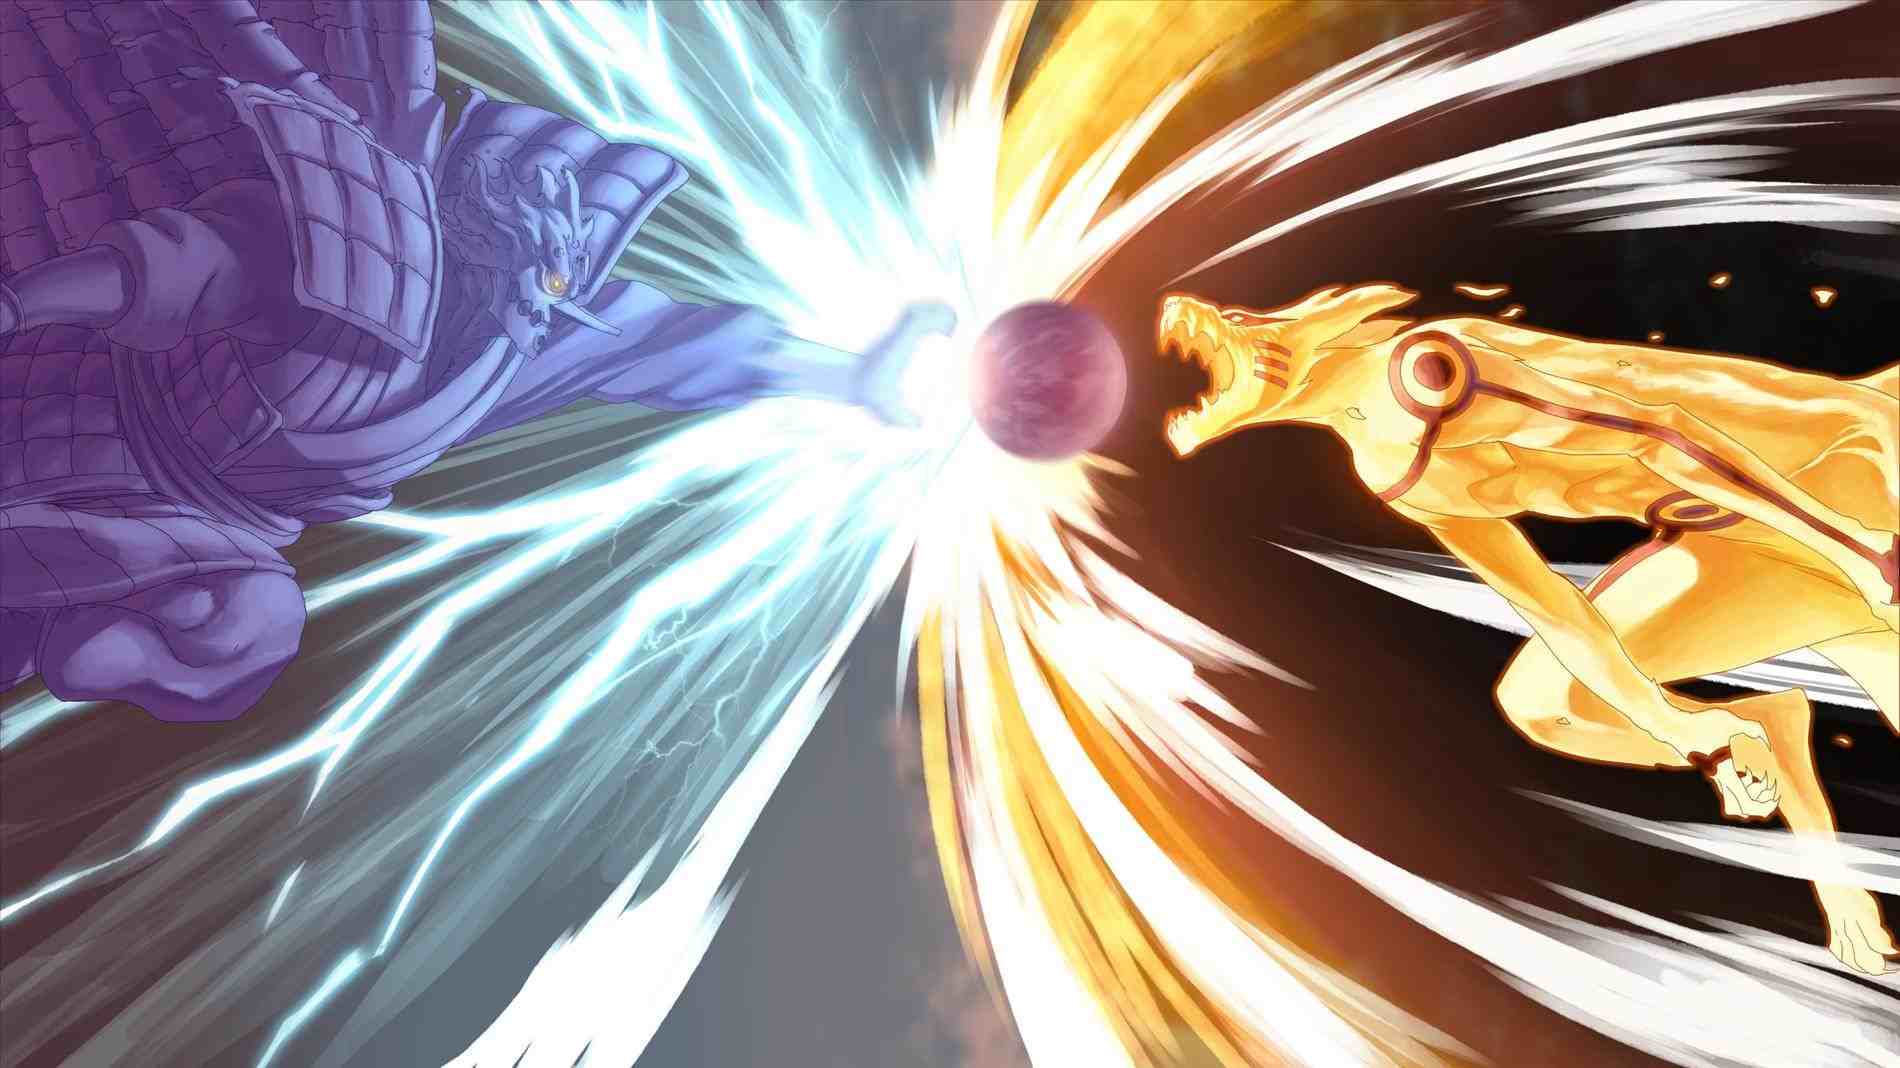 Naruto Rasengan vs Sasuke Chidori Wallpaper Free Naruto Rasengan vs Sasuke Chidori Background